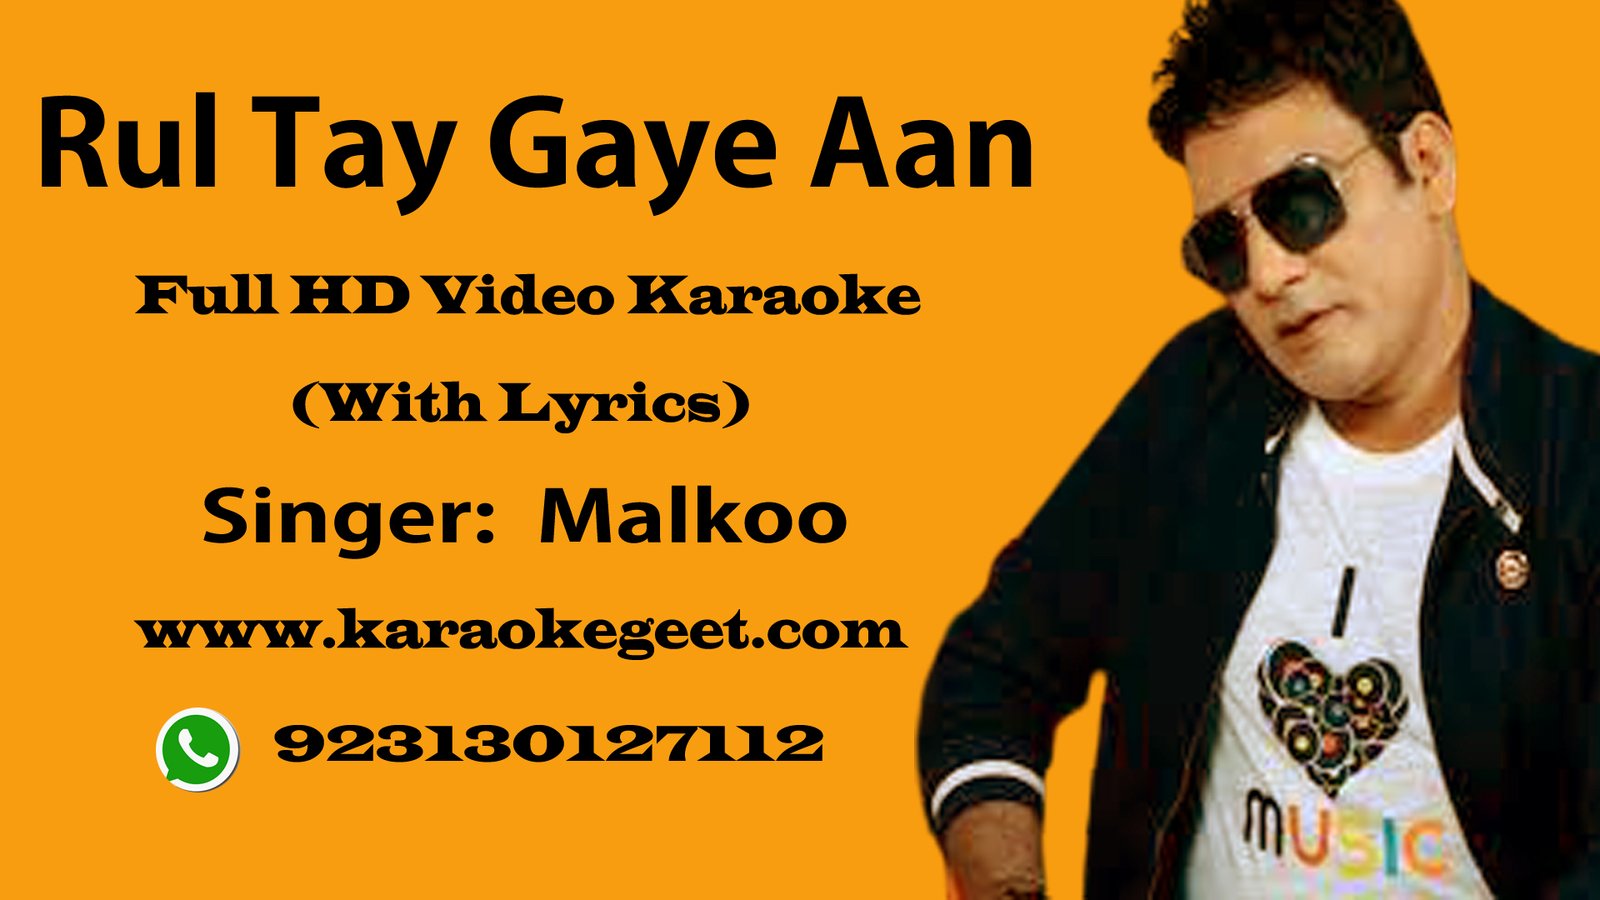 Rul Tay Gaya aan per chas bari aayi hai Video Karaoke